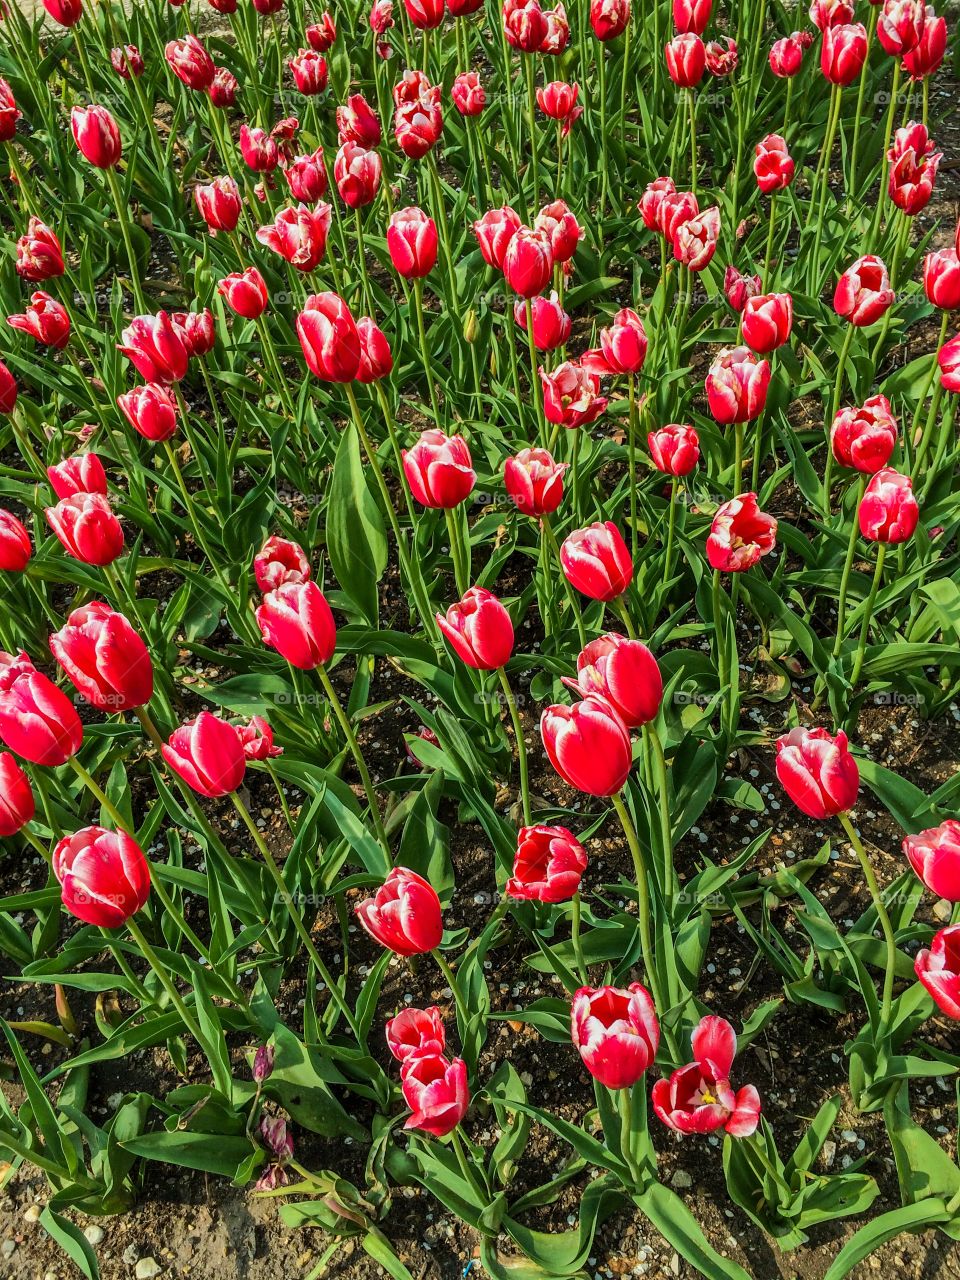 Garden of red tulips 